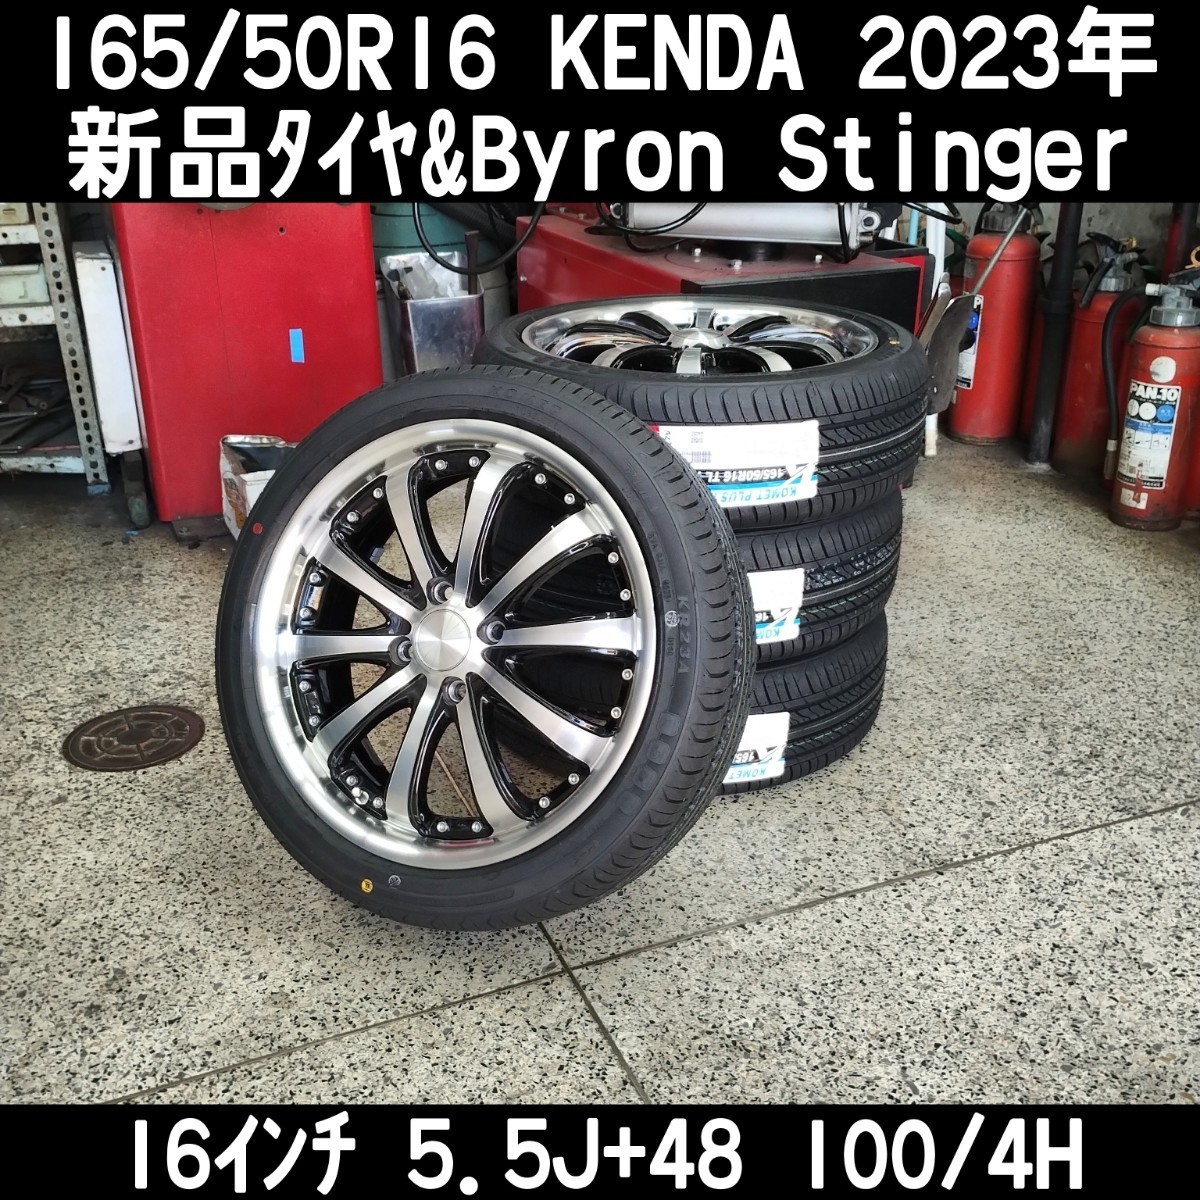 2023年 165/50R16 KENDA KR23A 新品タイヤ BADX Byron STINGER 16インチ5.5J+48 100/4H 4本 愛知県安城市 タント スペーシア N-BOX _画像1